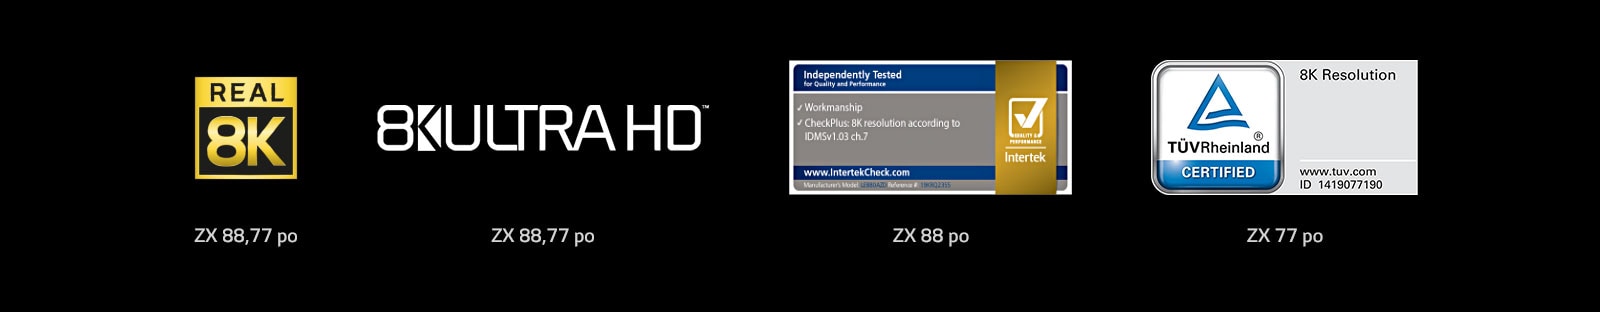 TV-OLED-Brandsite-Technology-14-Logo-Desktop